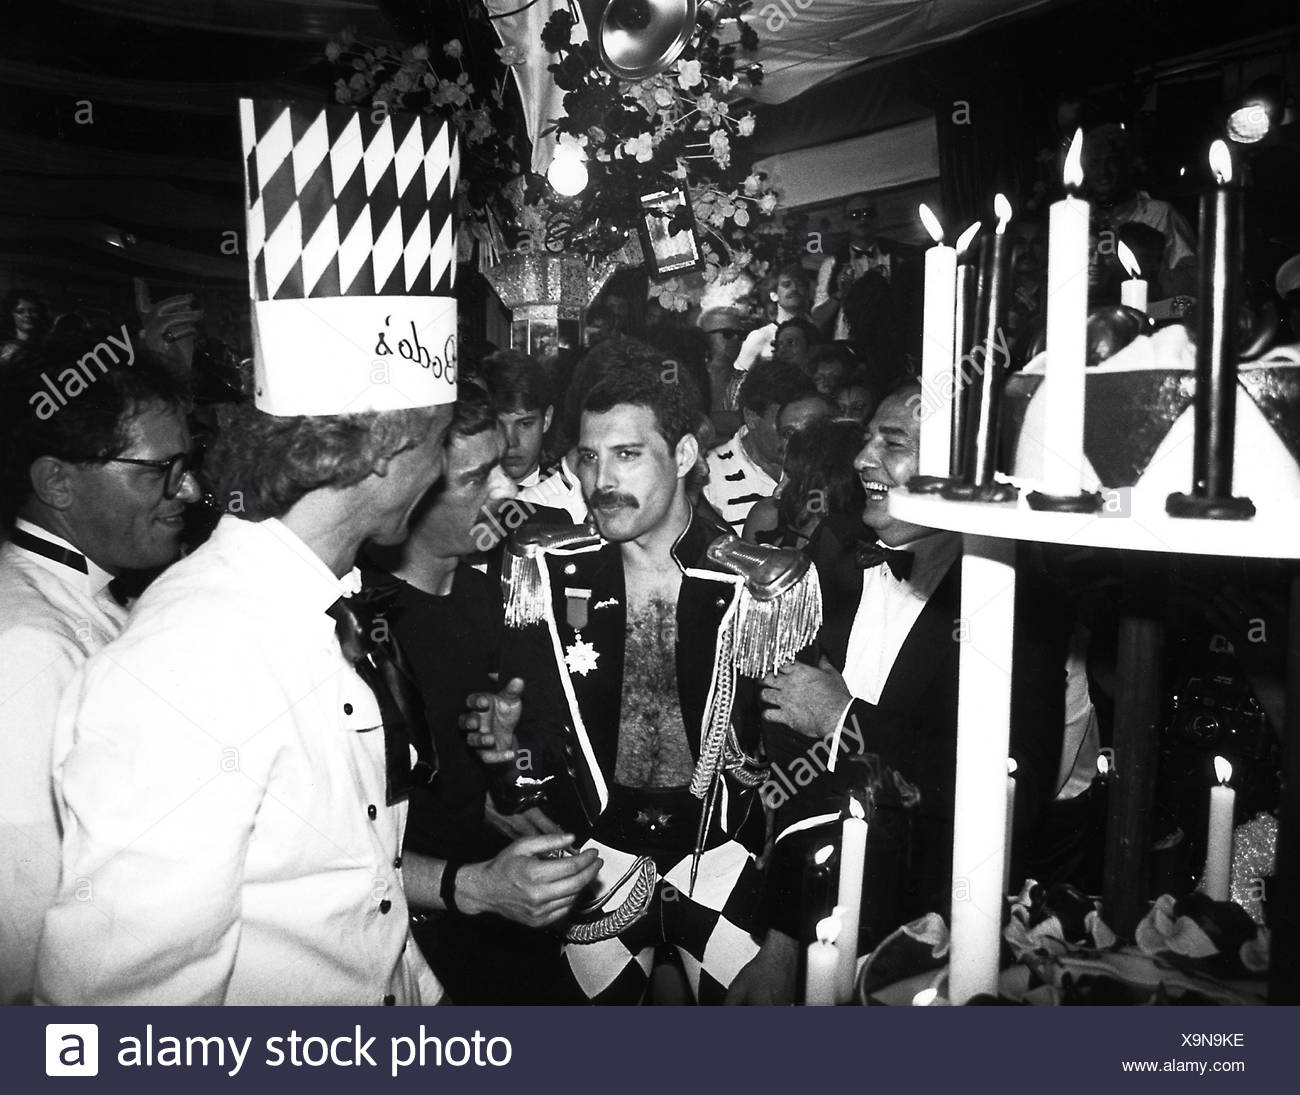 Queen, englische Band, fand 1970, Sänger Freddy Mercury, halbe Länge, auf  seiner Geburtstagsfeier in der Diskothek "Henderson", München, 1985  Stockfotografie - Alamy